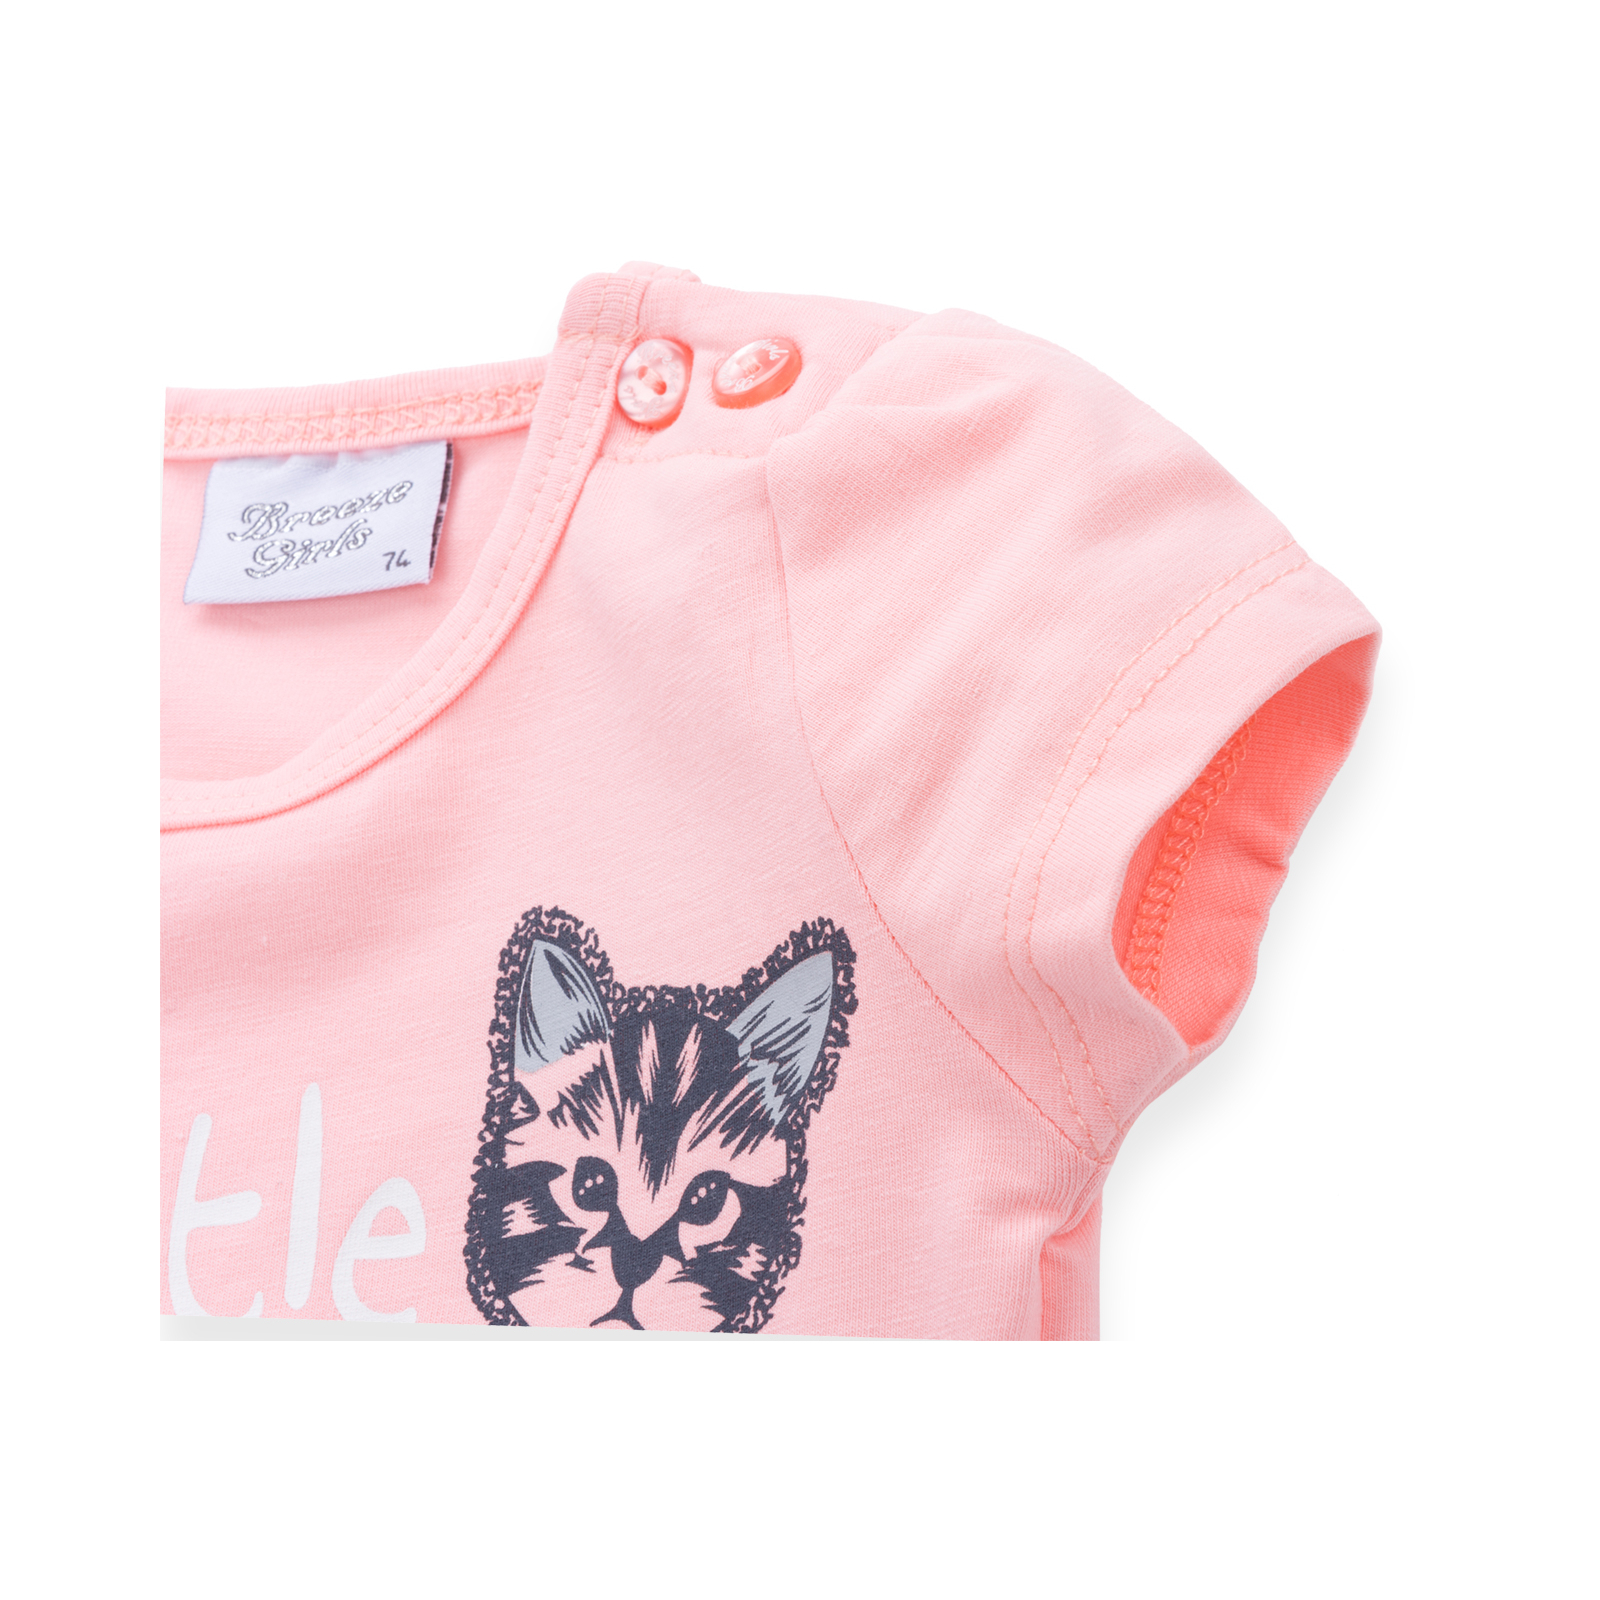 Набор детской одежды Breeze футболка с котиком и штанишки с кармашками (8983-98G-peach) изображение 4